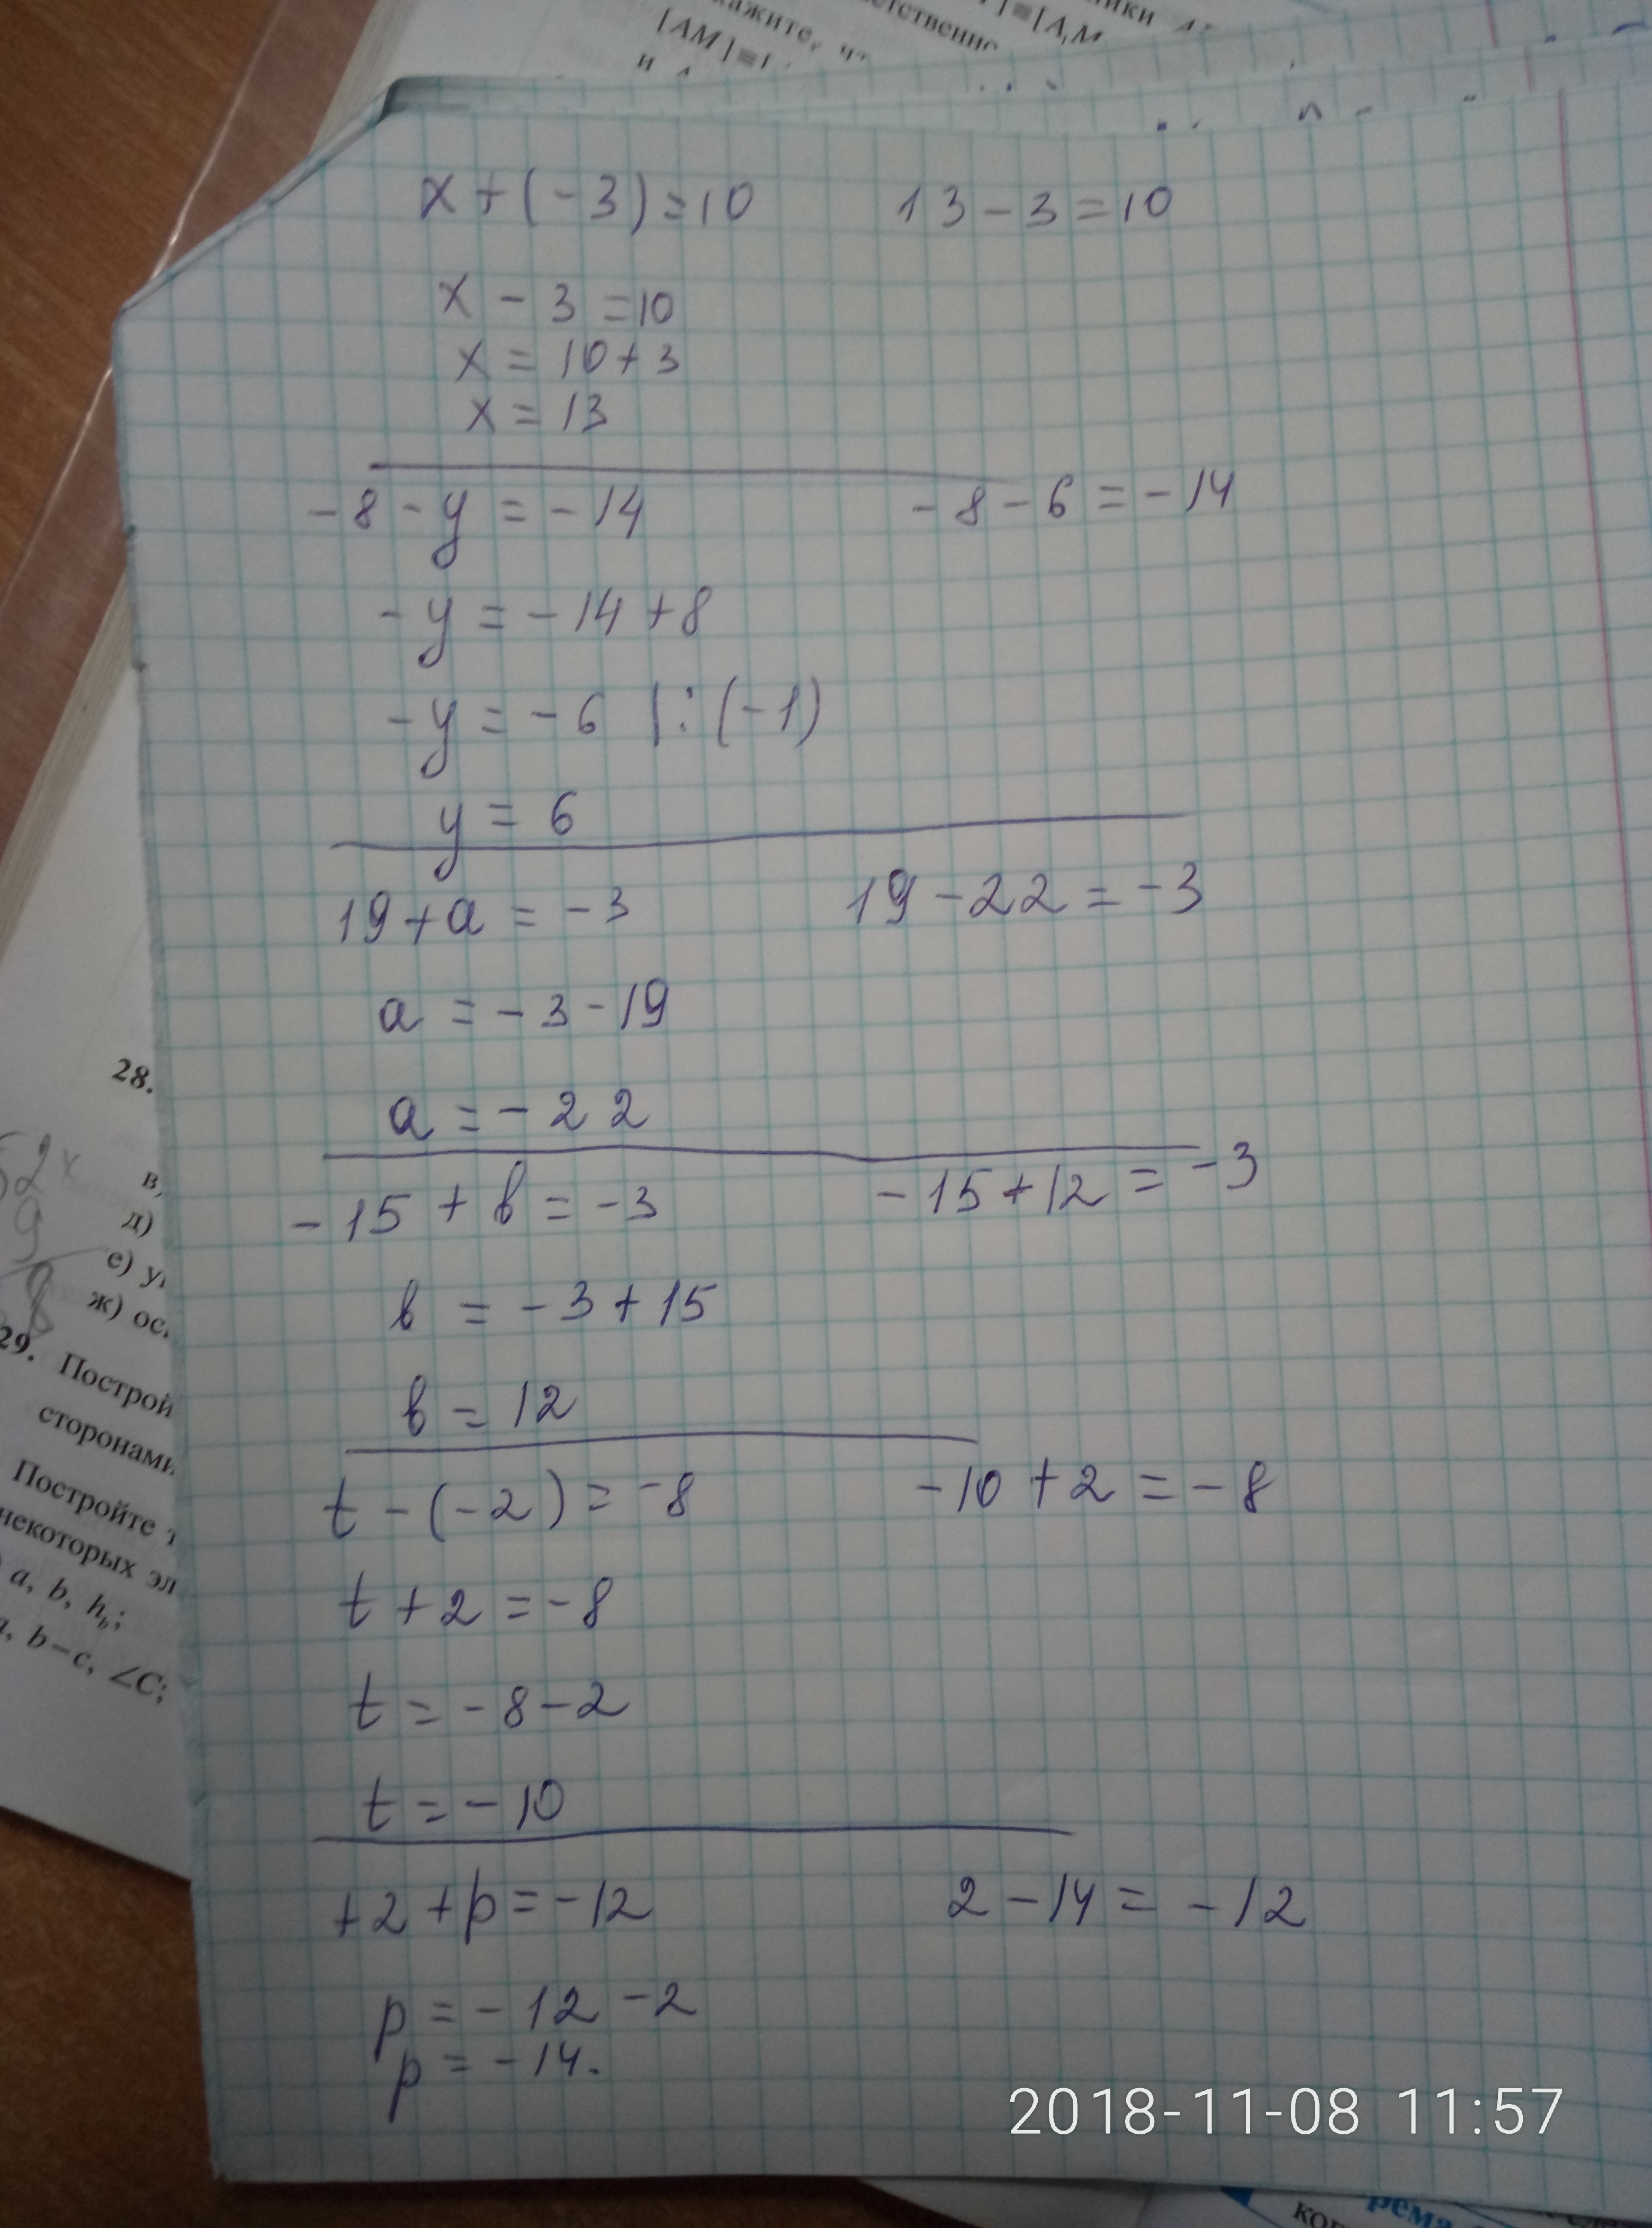 3x 10x 3 x2 3x. Ответ 8= x=2. X^3-6x^2+3x+21=0 решение. 8/X-3-10/X 2. X-3 ответ.